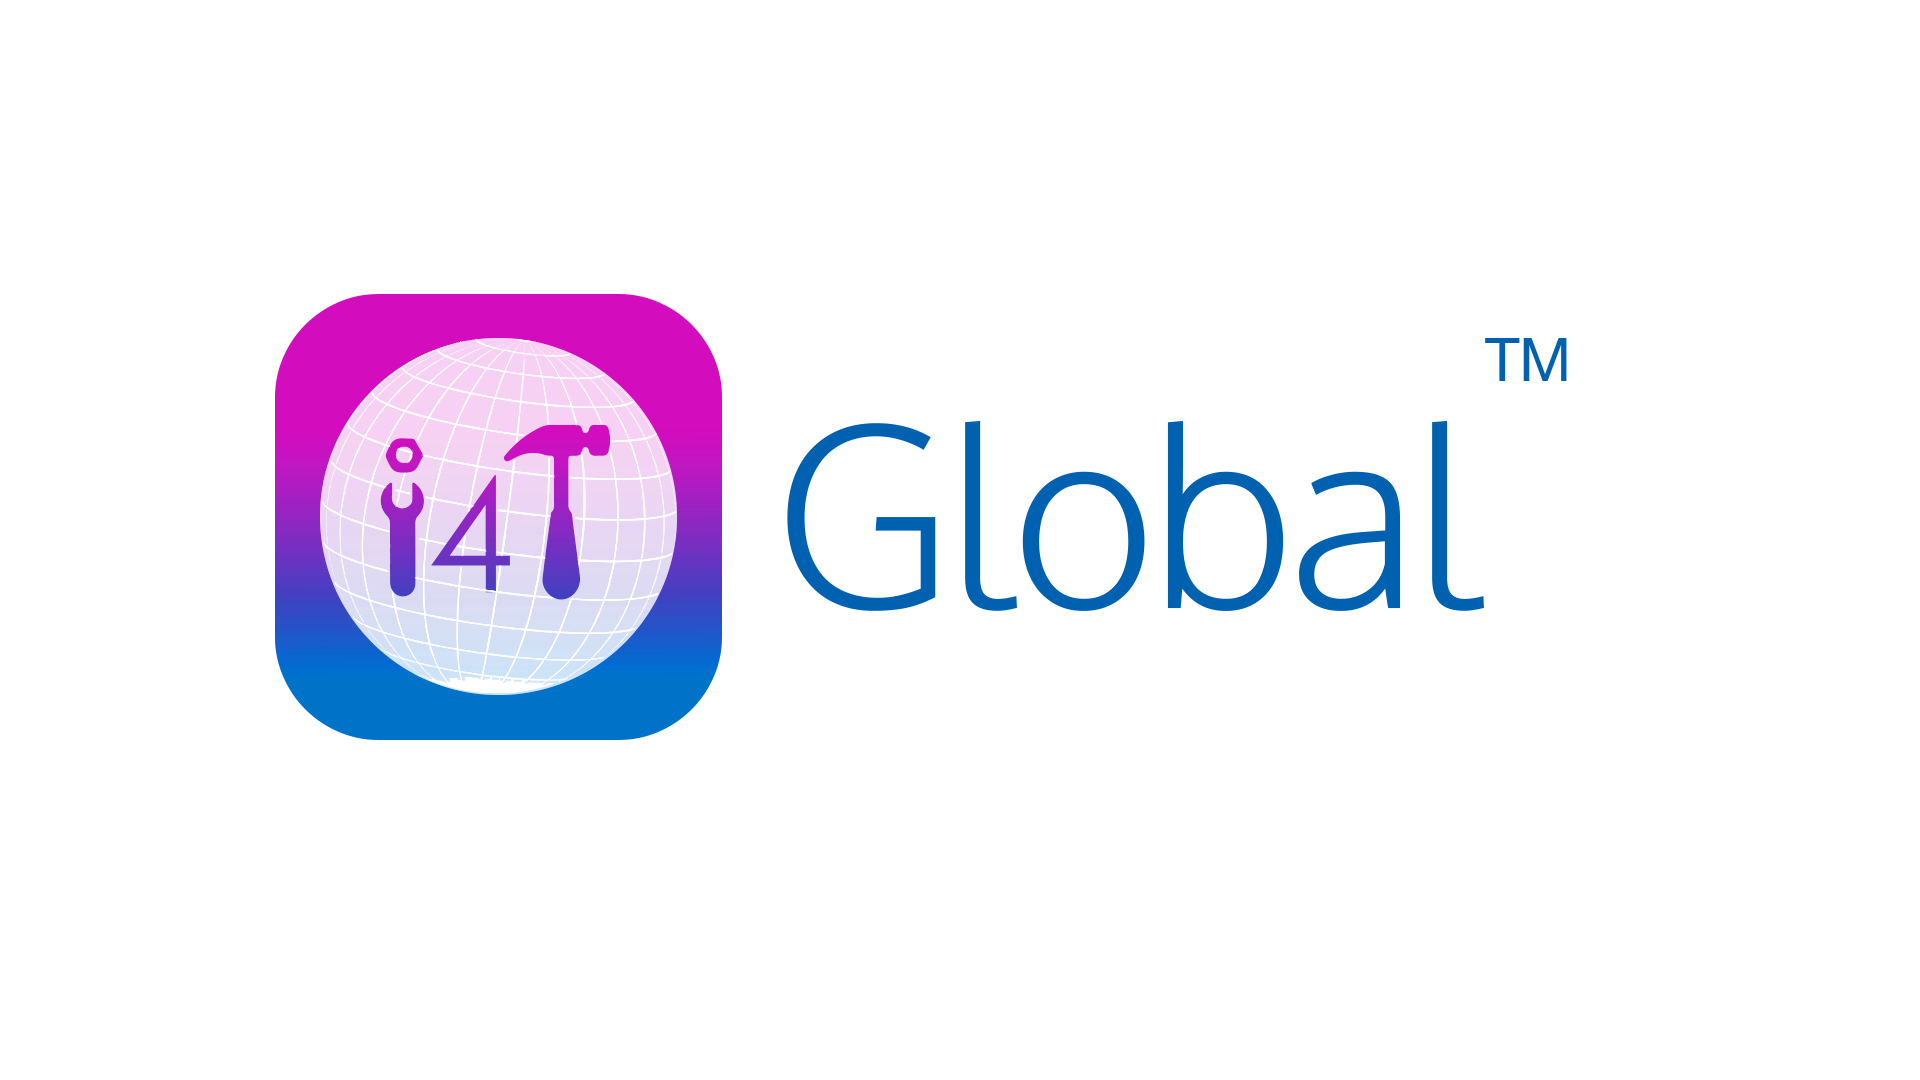 i4T Global